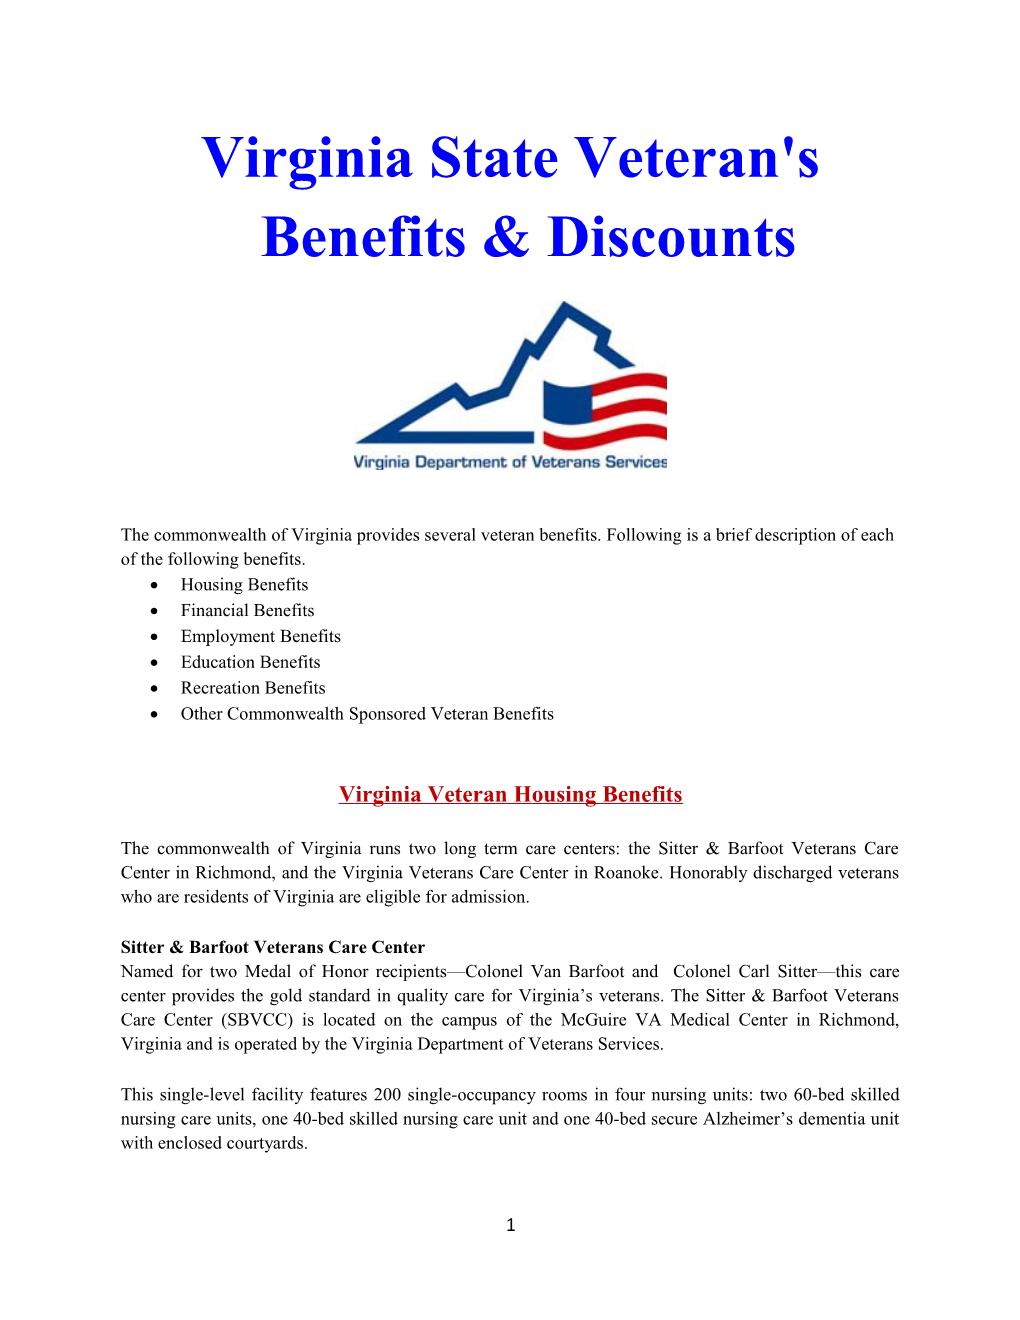 Virginia State Veteran's Benefits & Discounts